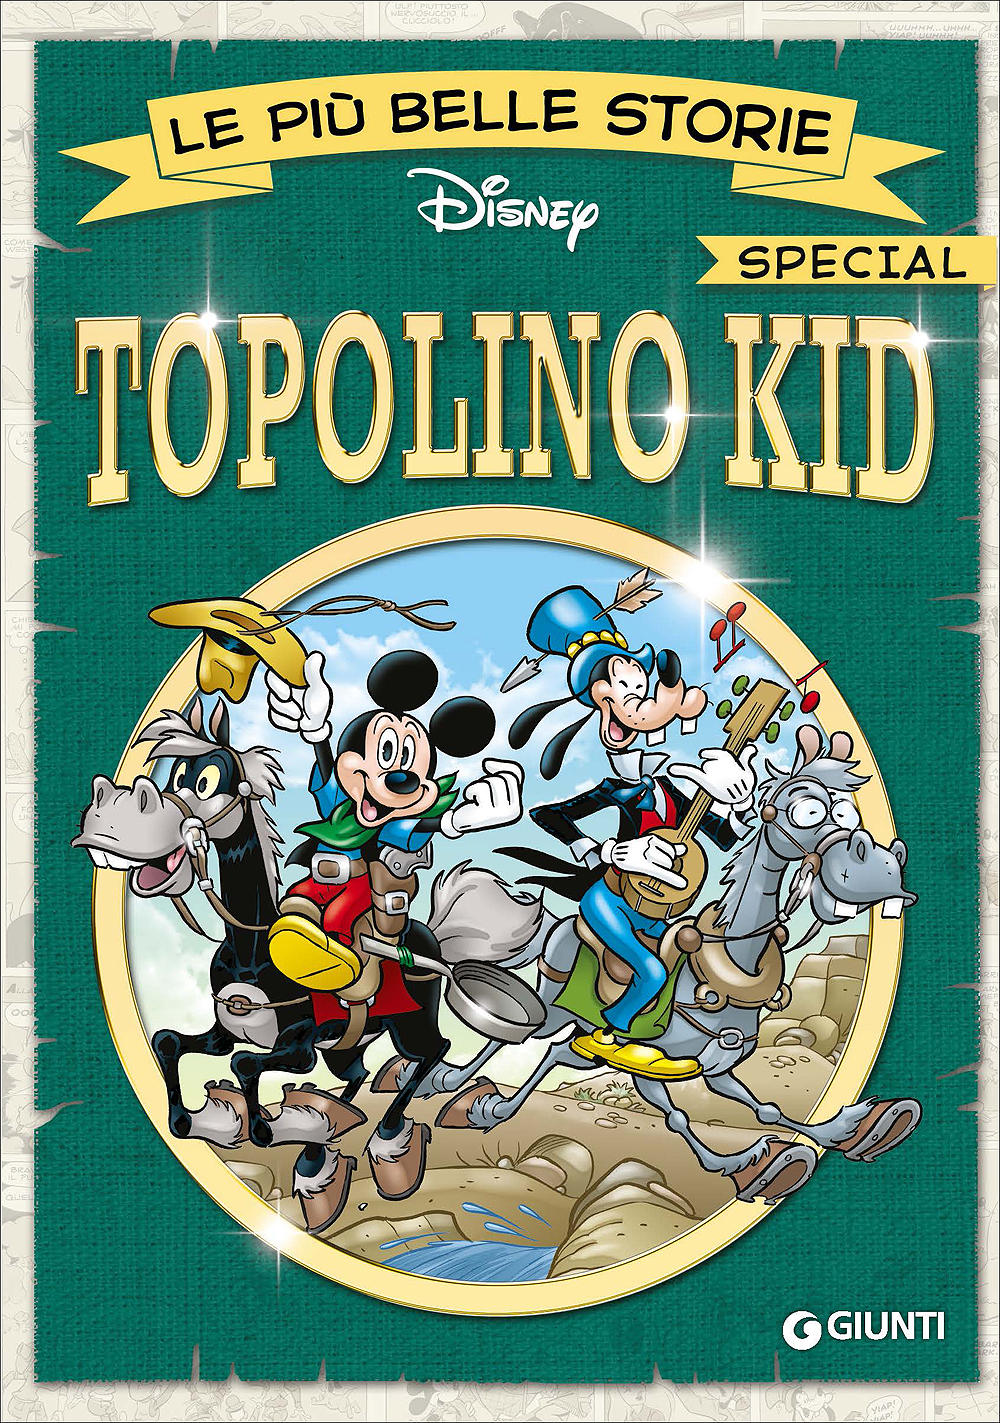 Le più belle storie Special - Topolino Kid